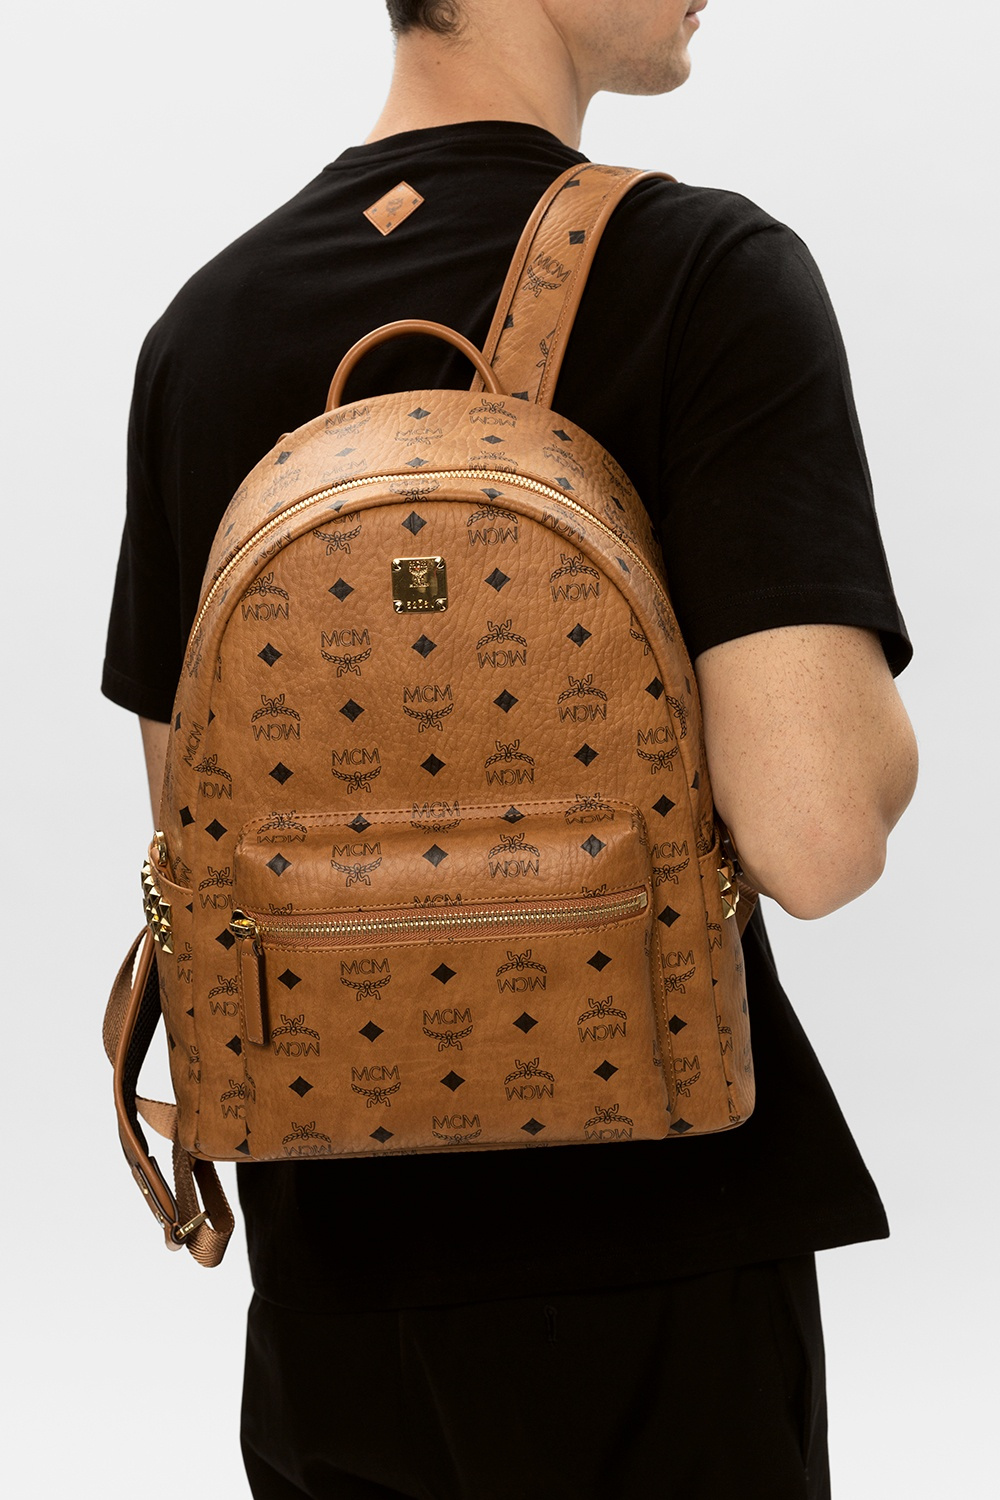 MCM: backpack for woman - Camel  Mcm backpack MWKDATA01 online at